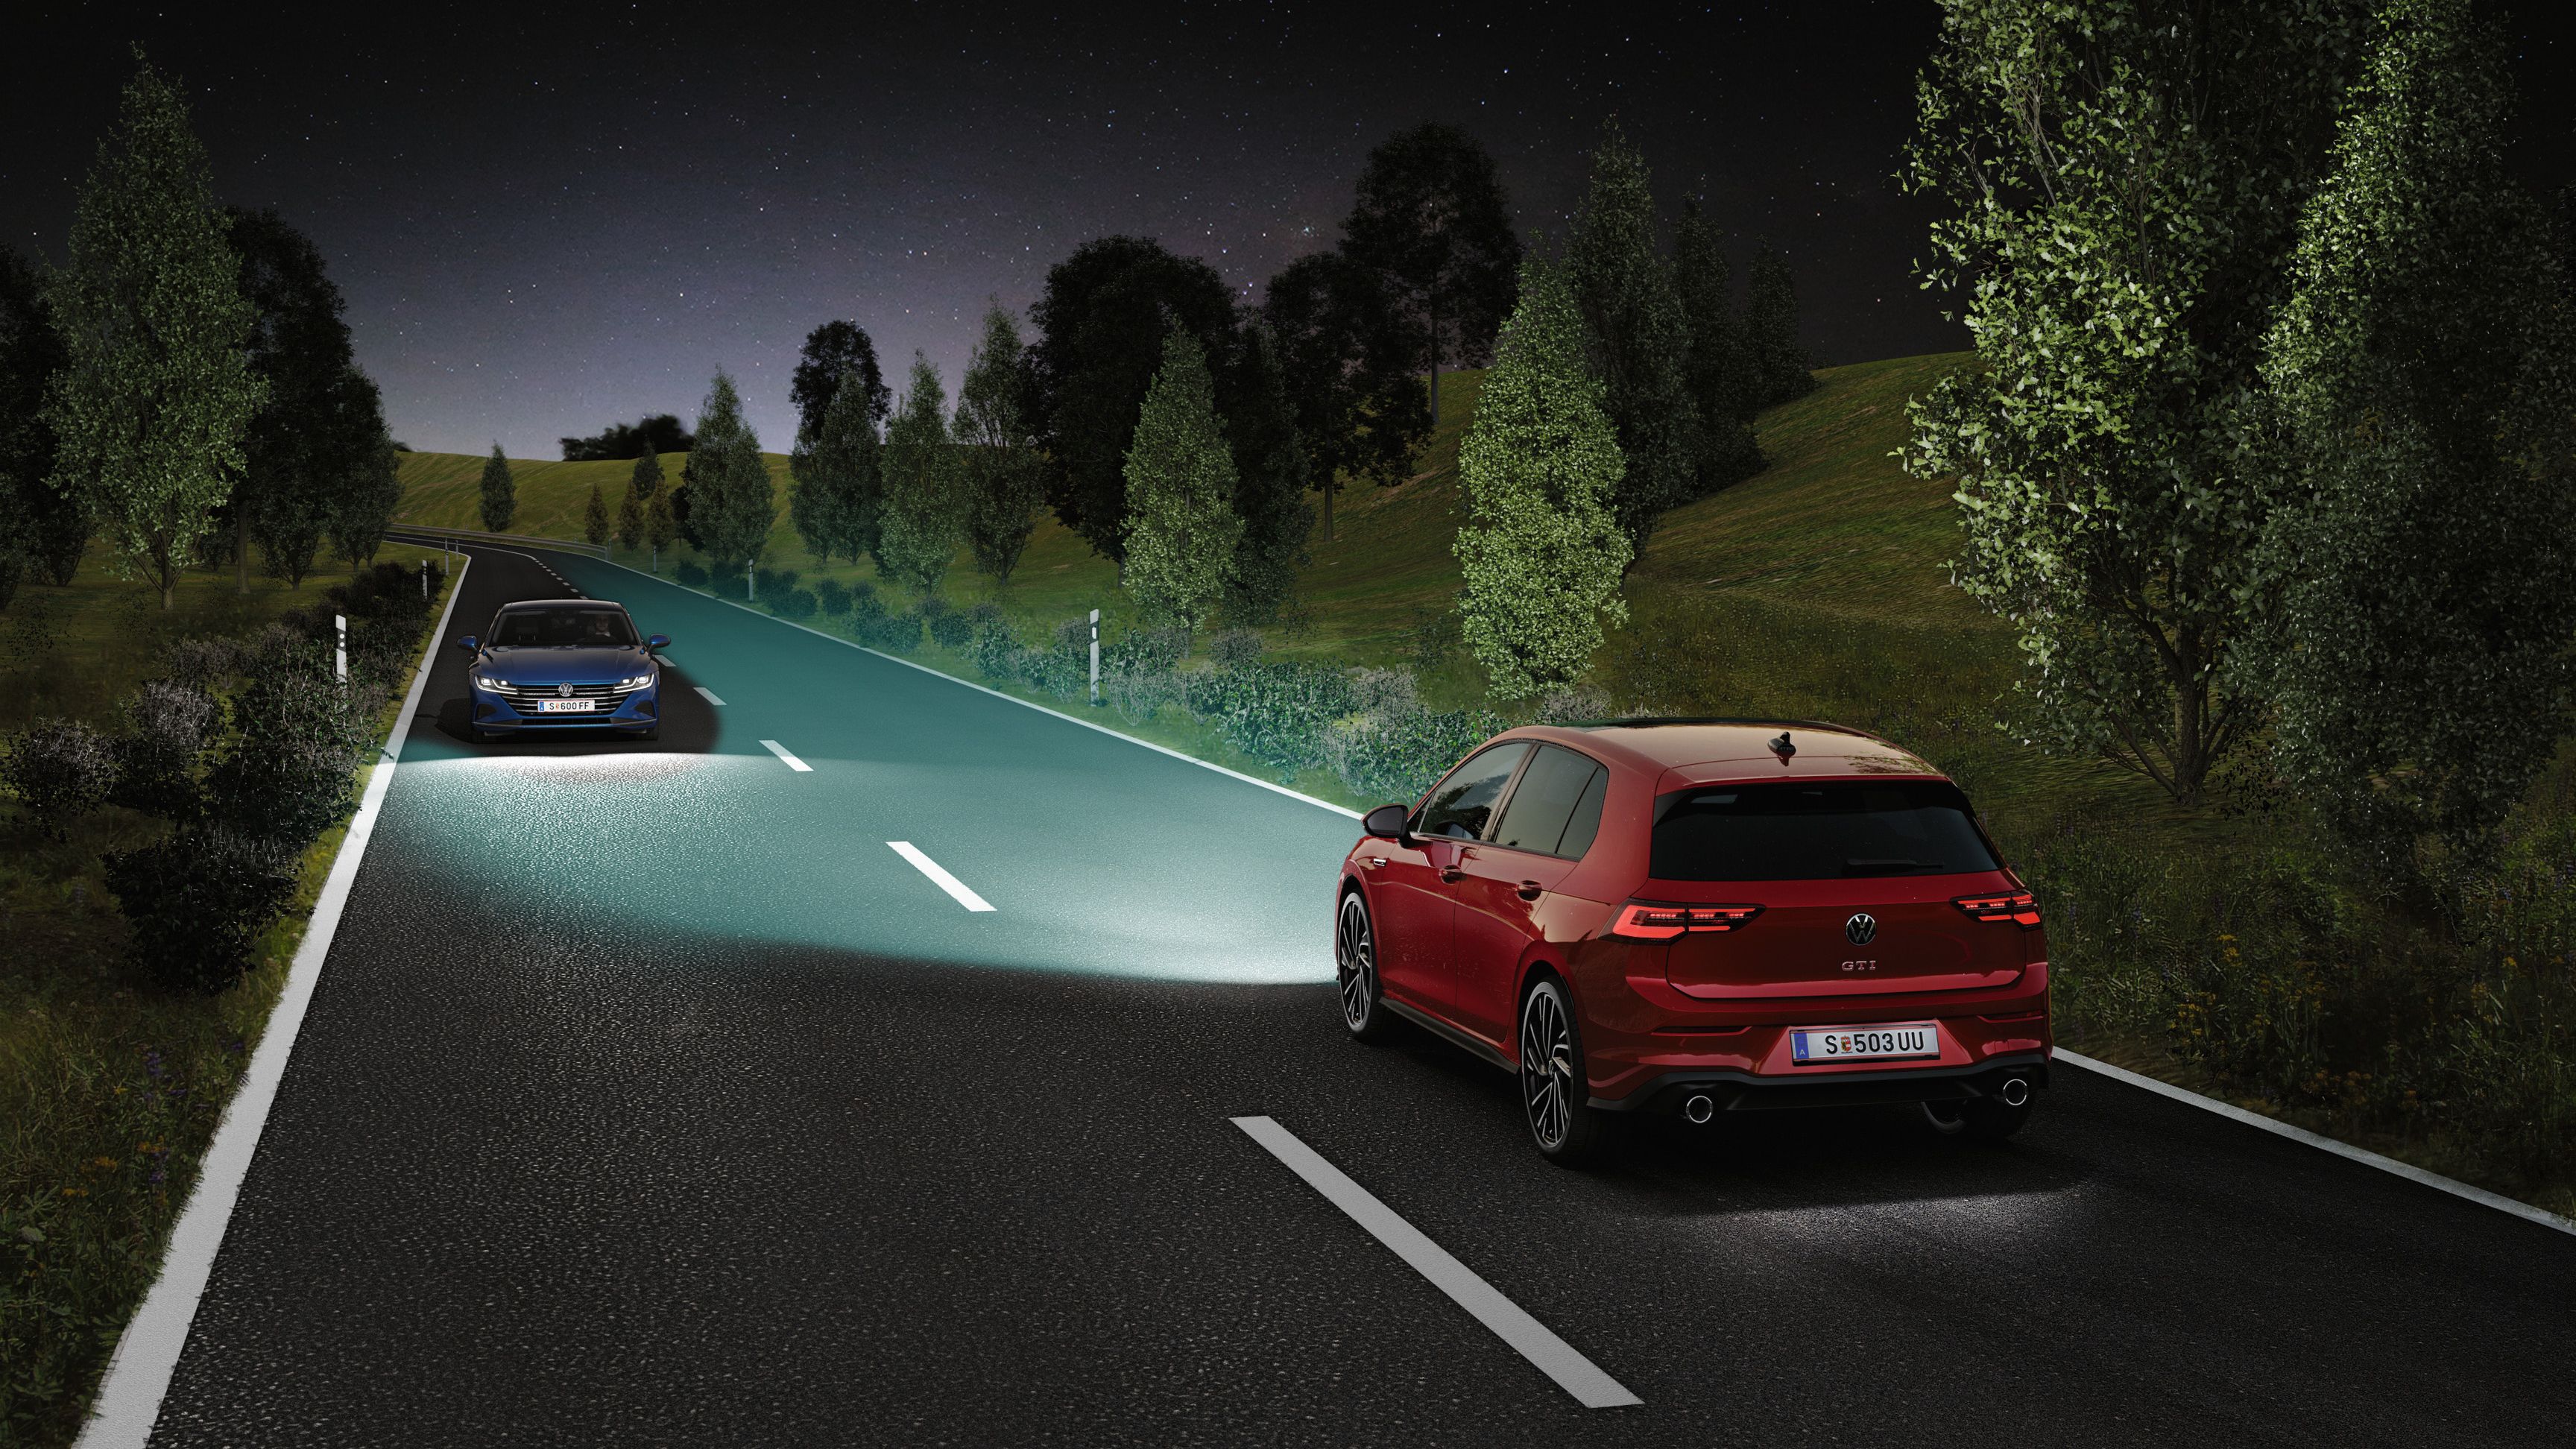 VW Golf GTI fährt in der Nacht auf einer Straße